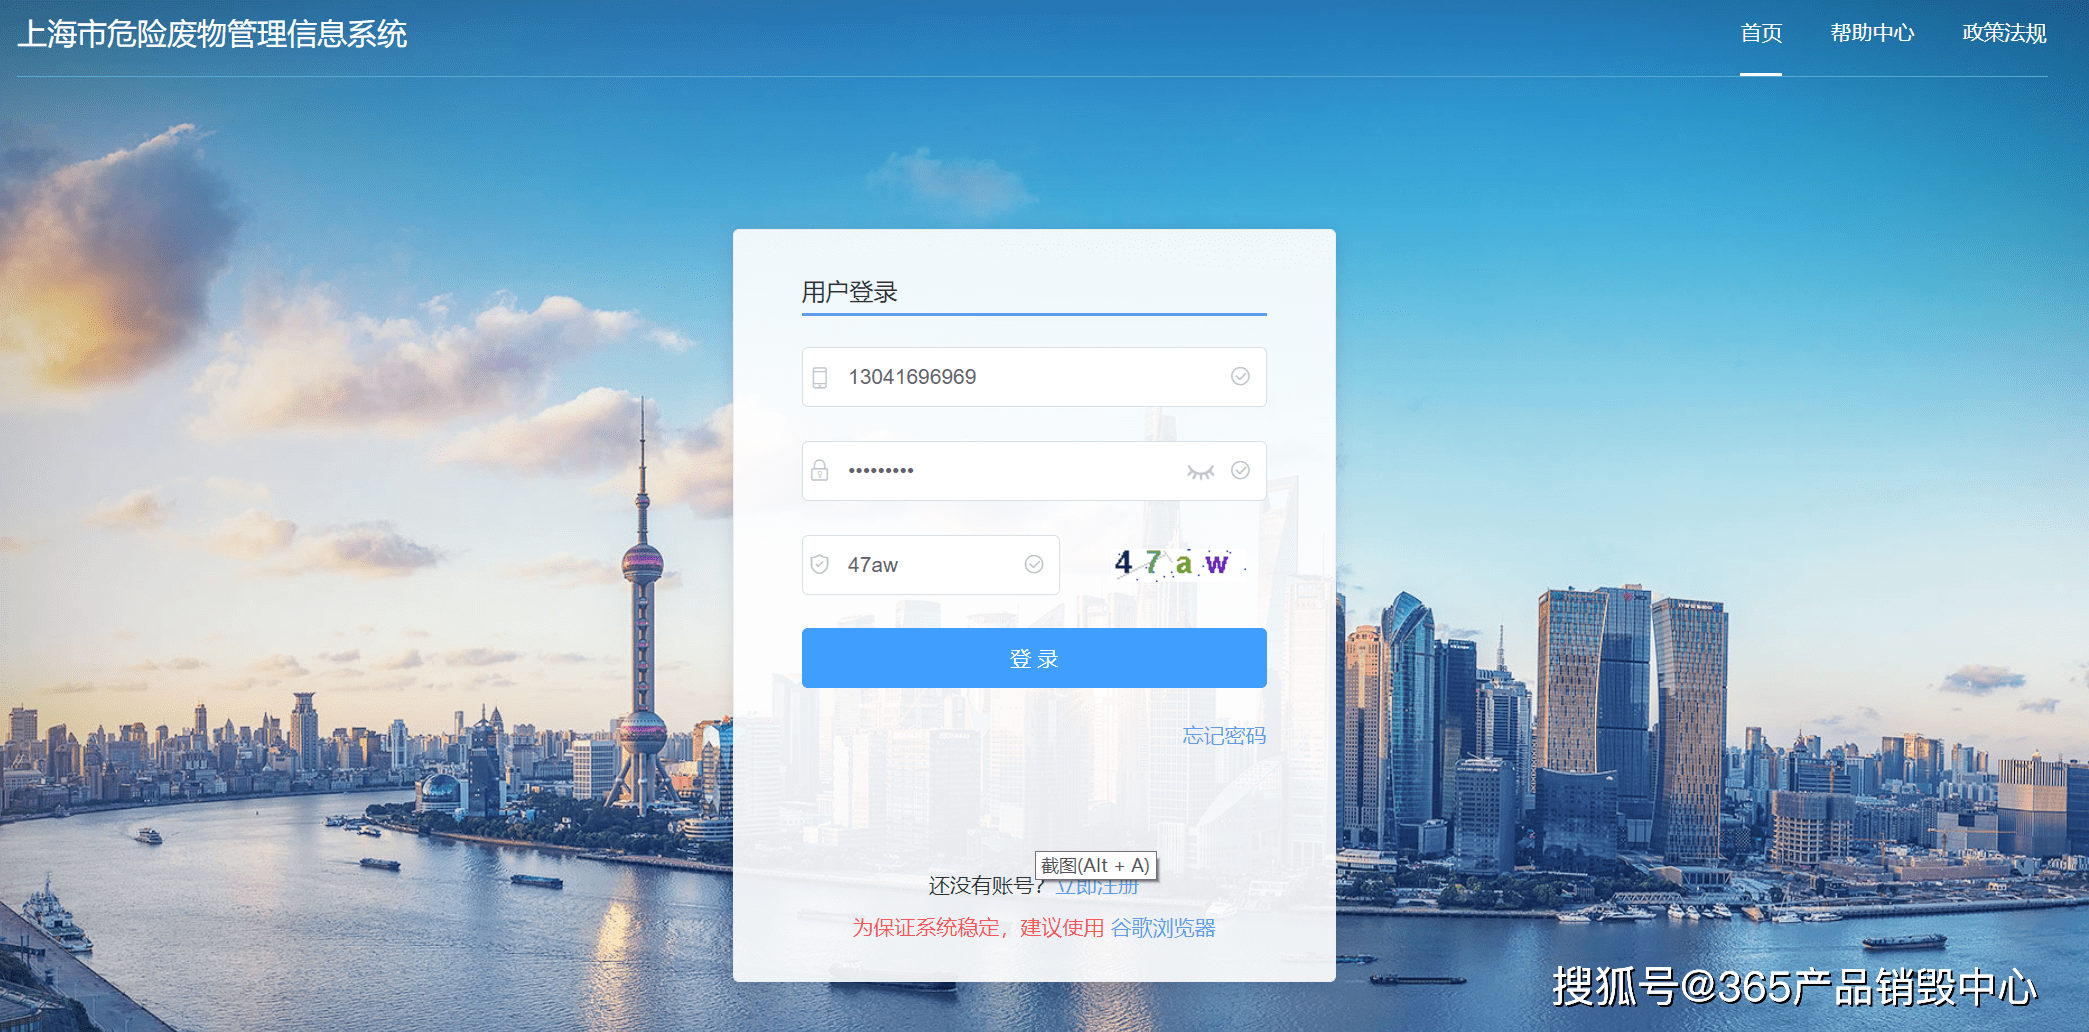 皇冠登录地址_上海一般工业固废备案申报网址 登录网站ip地址